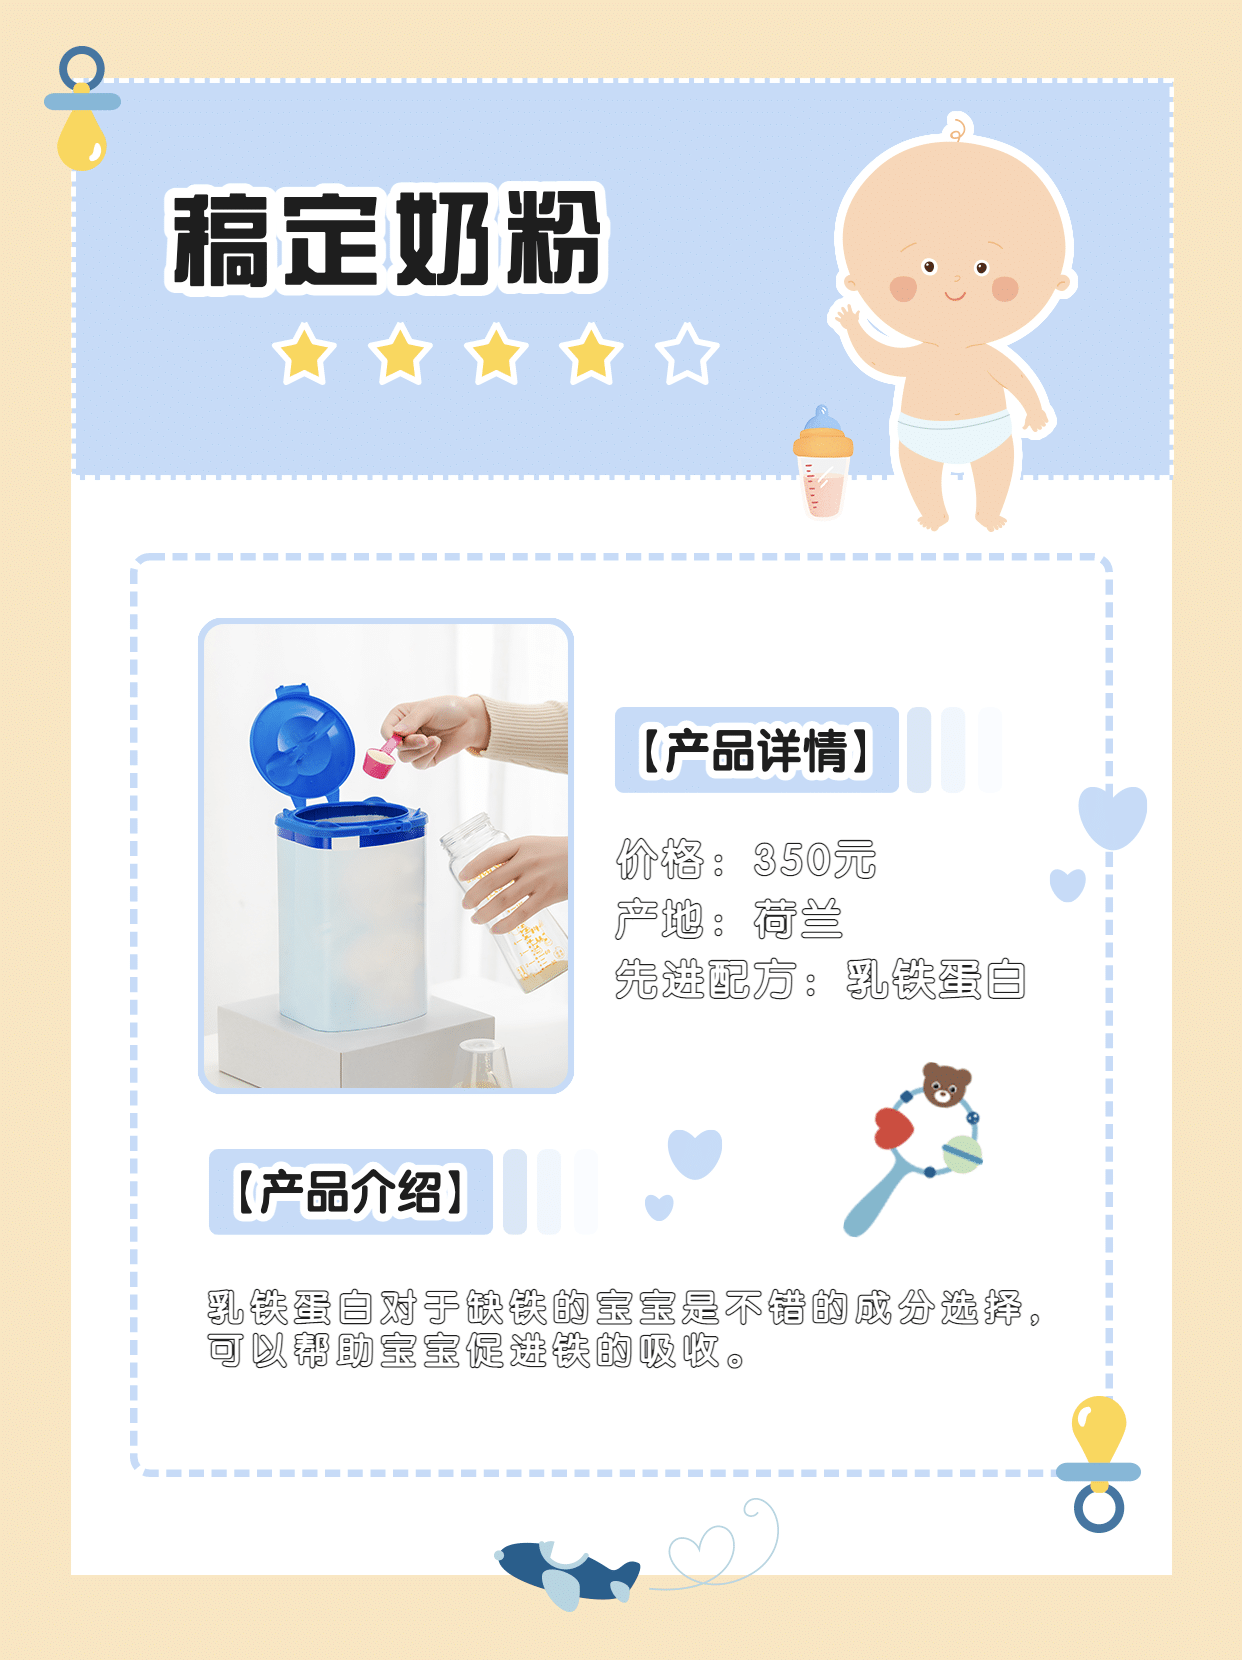 小红书种草母婴宝宝产品展示奶粉小红书配图